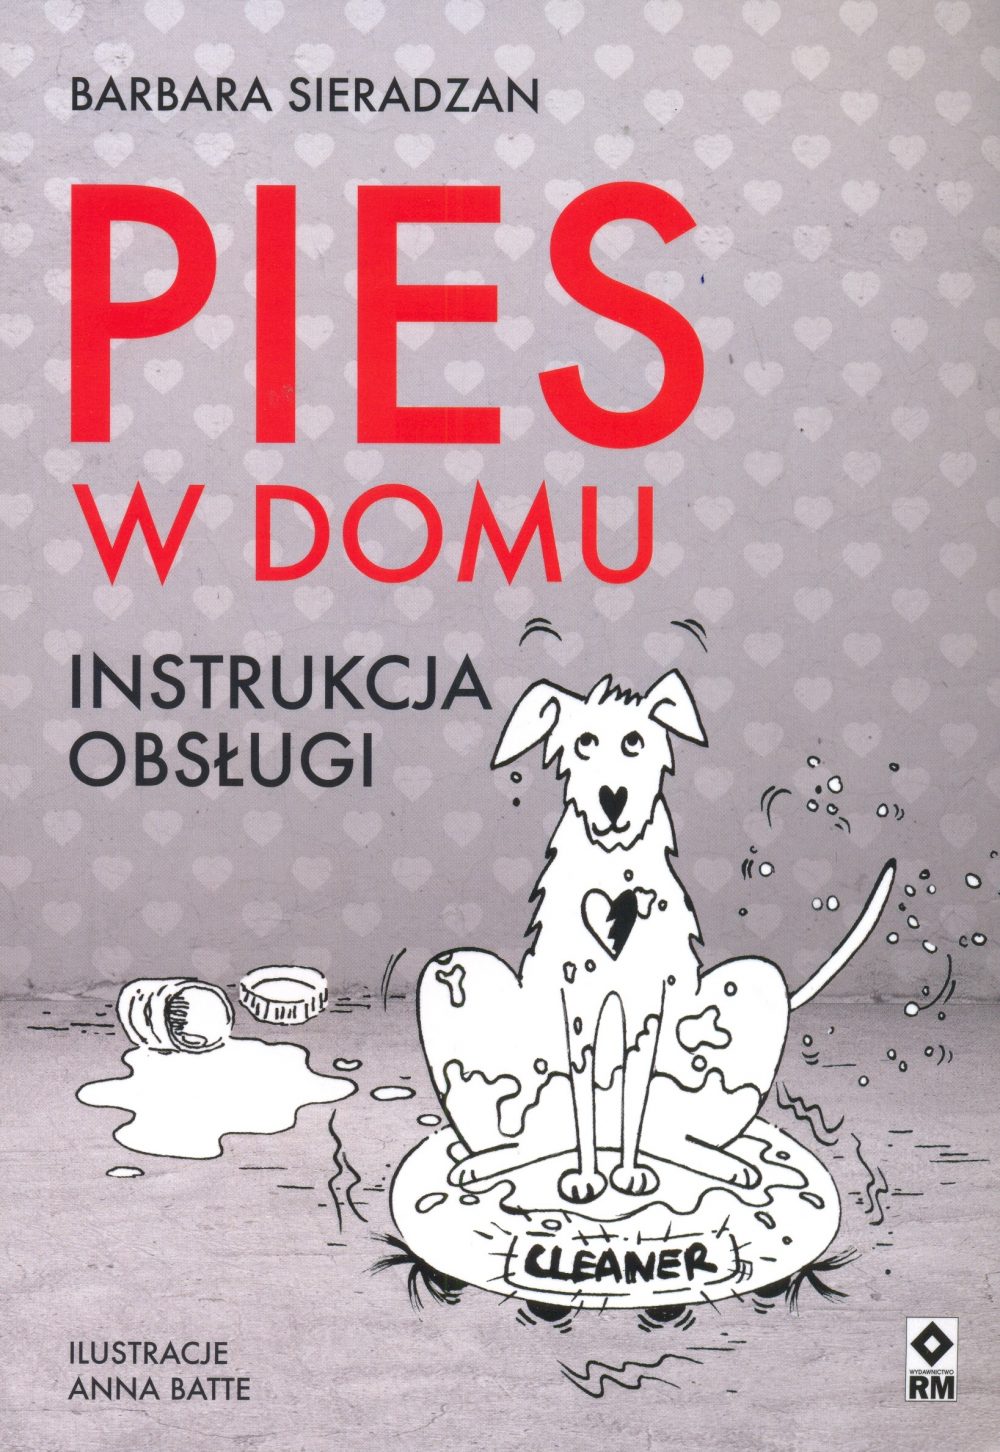 Regulamin konkursu - książka „Pies w domu. Instrukcja obsługi” Barbary Sieradzan